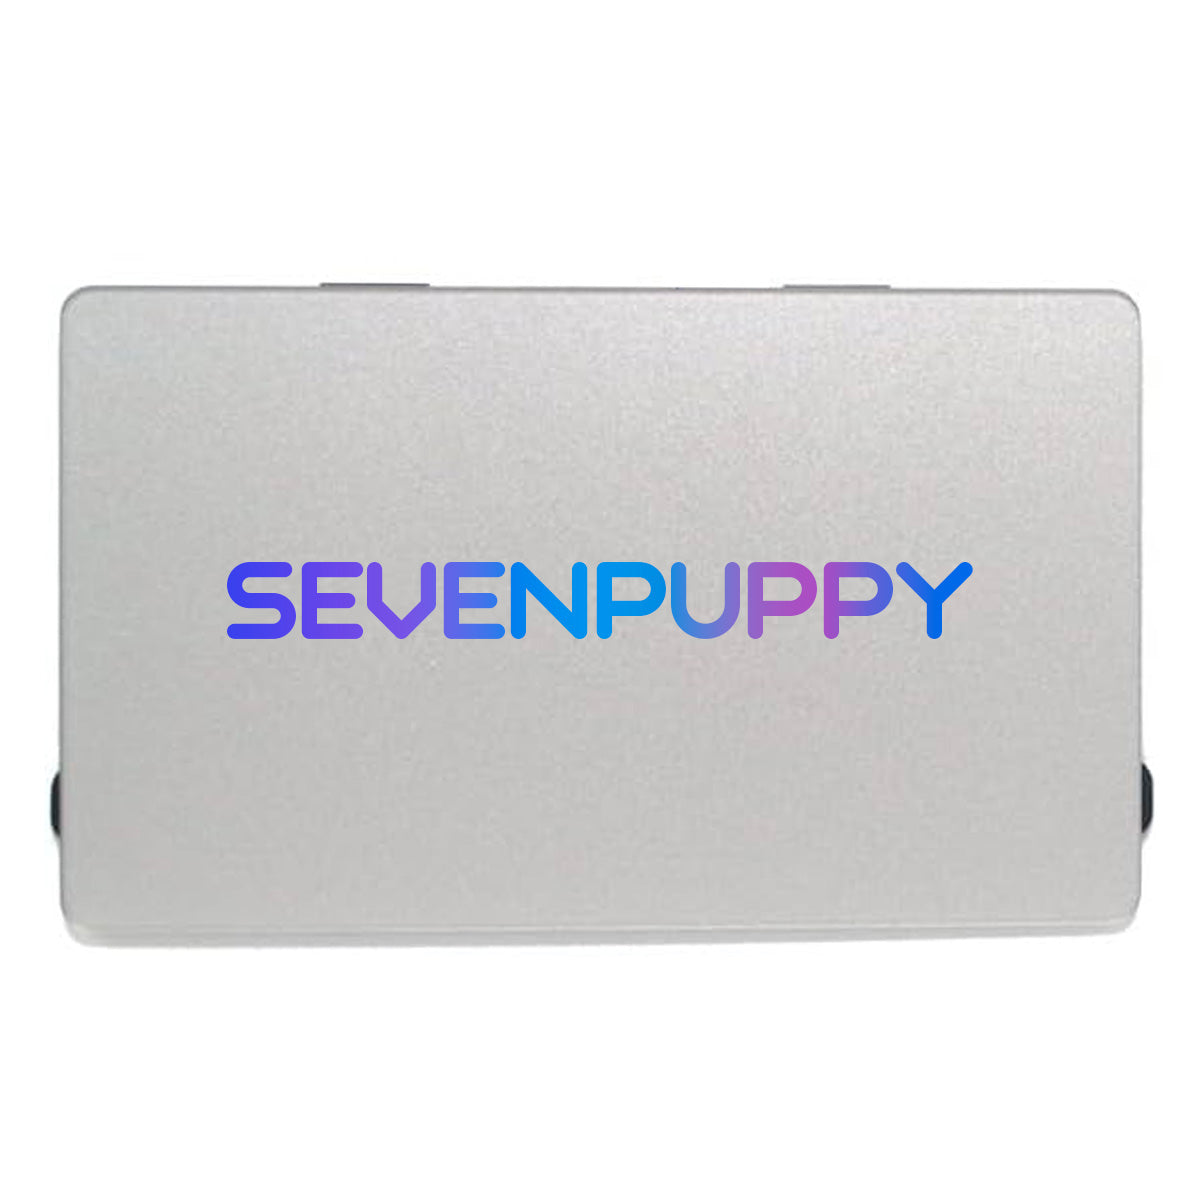 Amazon Ebay Top (SEVEN PUPPY) nuevo para MacBook Pro 11 "A1465 2011-2012 año pantalla de ordenador portátil Trackpad + conjunto de barra táctil